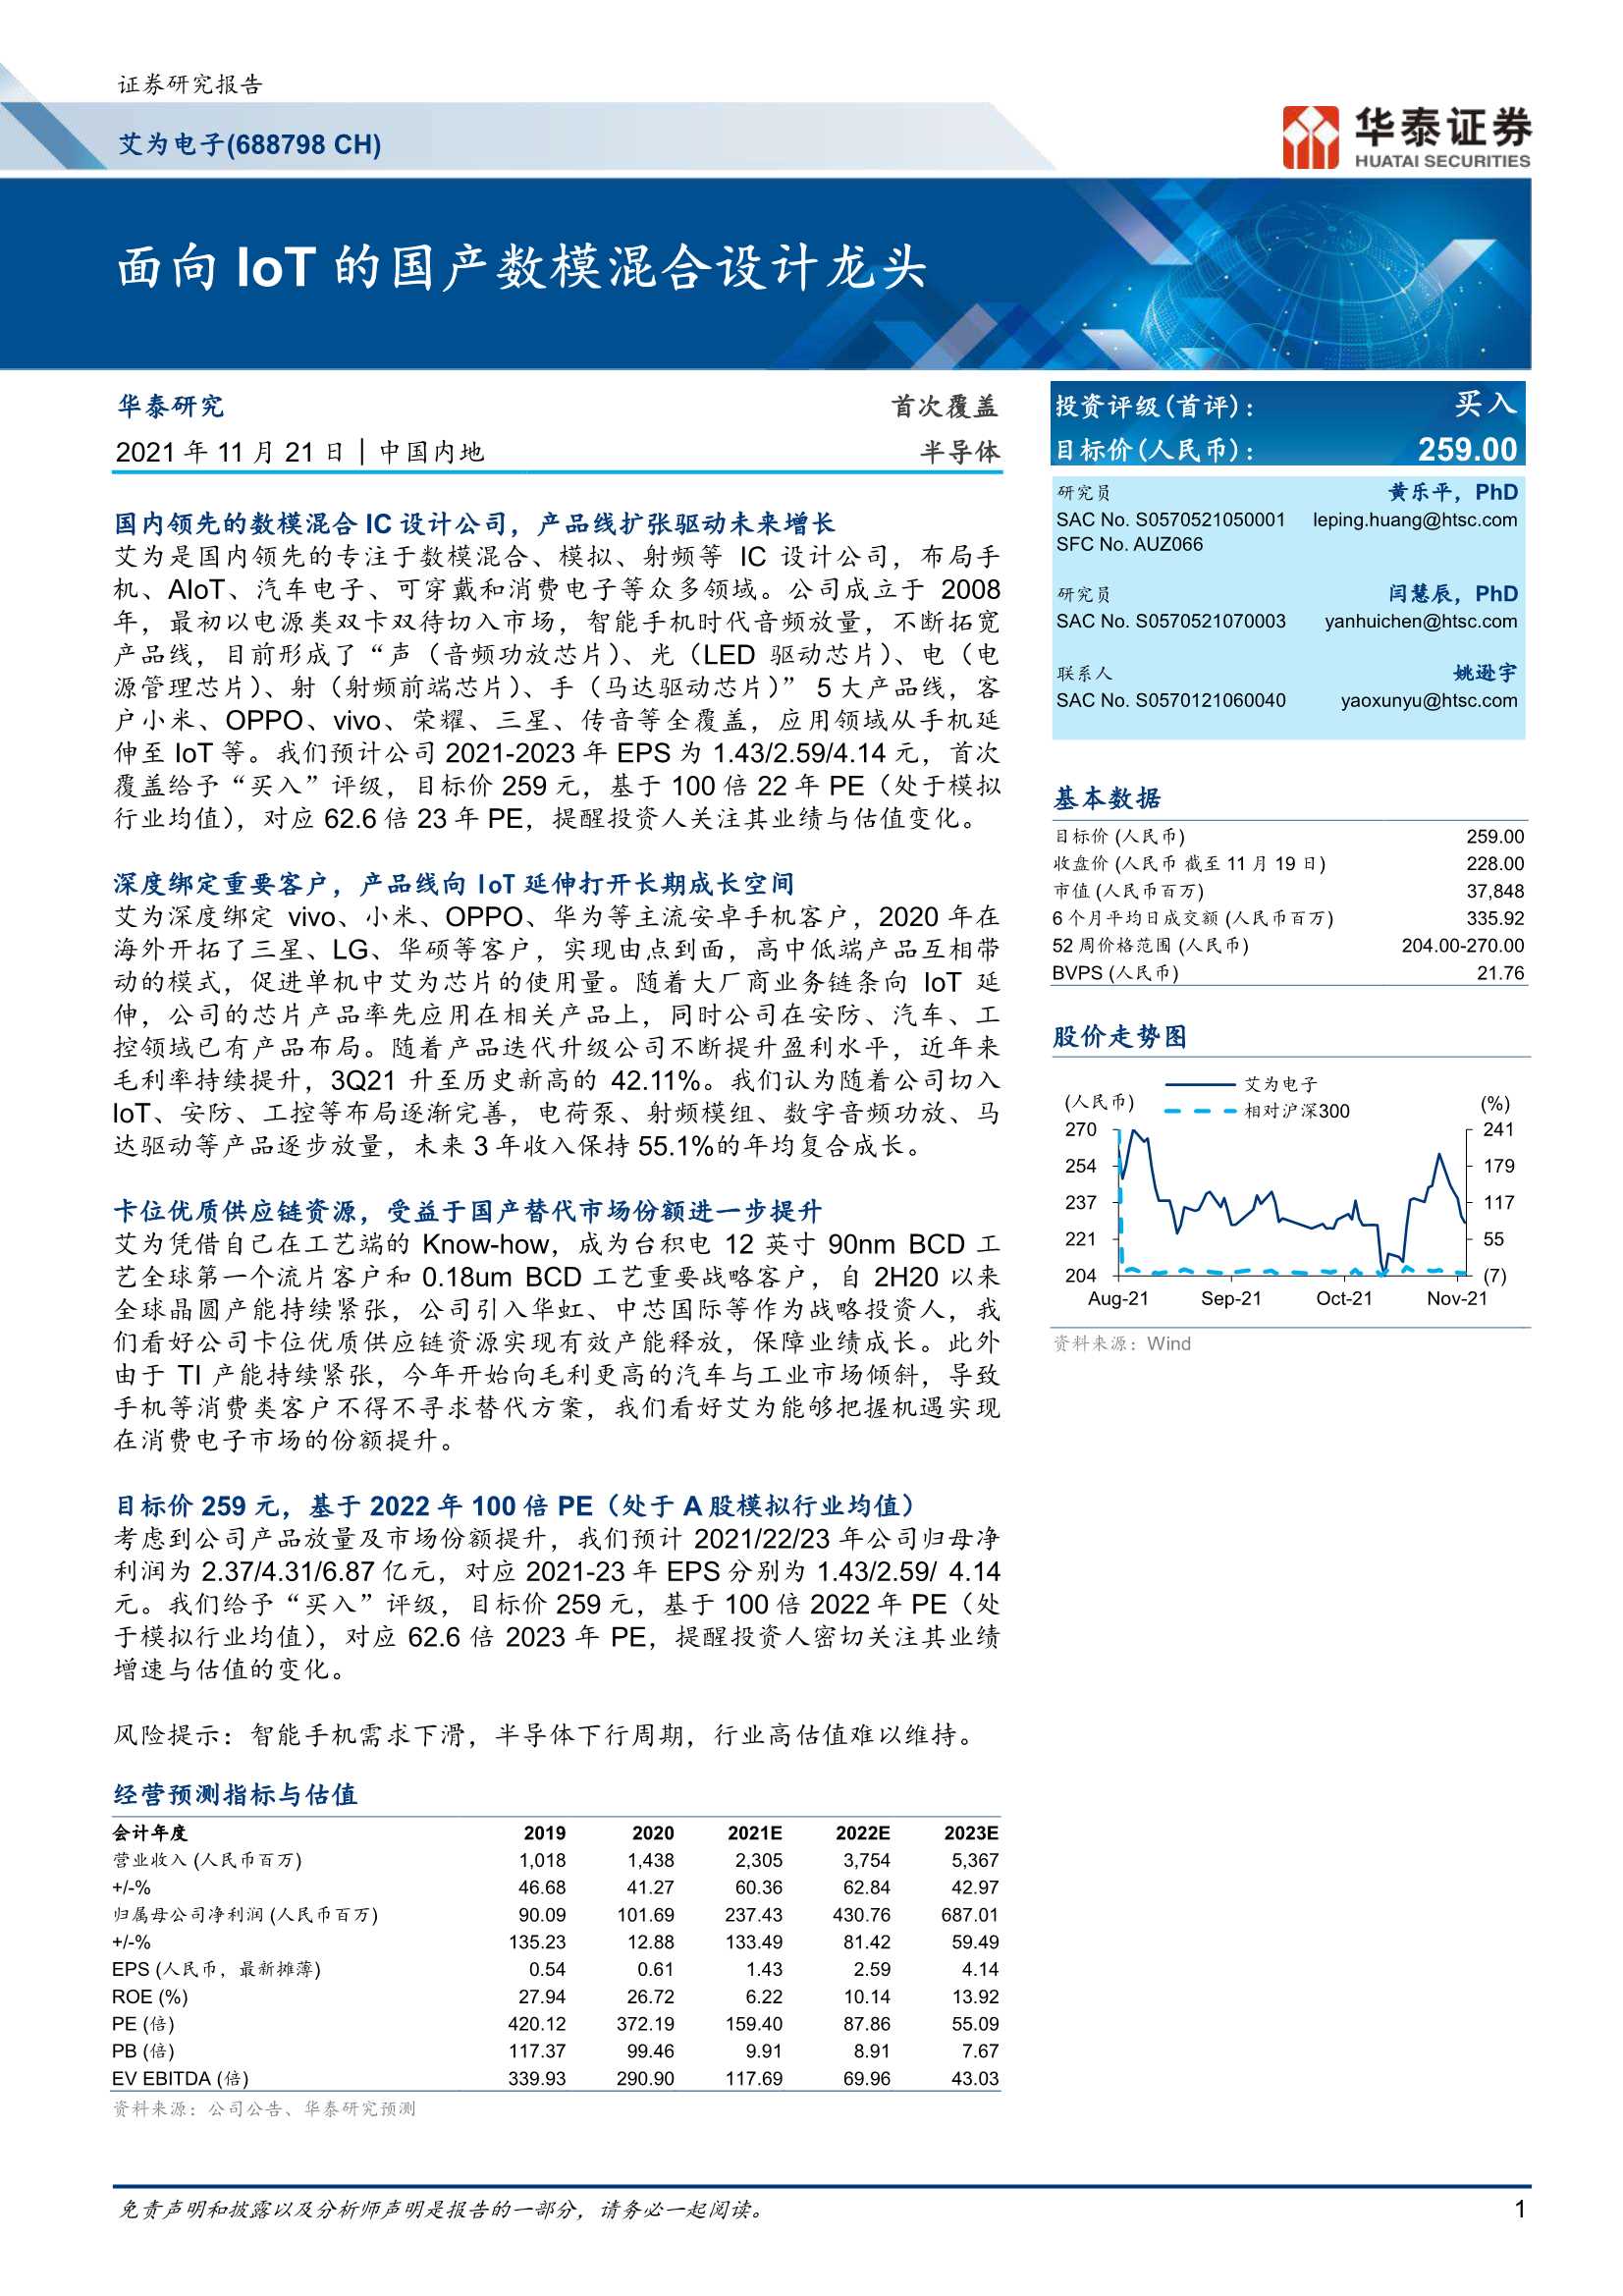 华泰证券-艾为电子-688798-面向IoT的国产数模混合设计龙头-20211121-26页